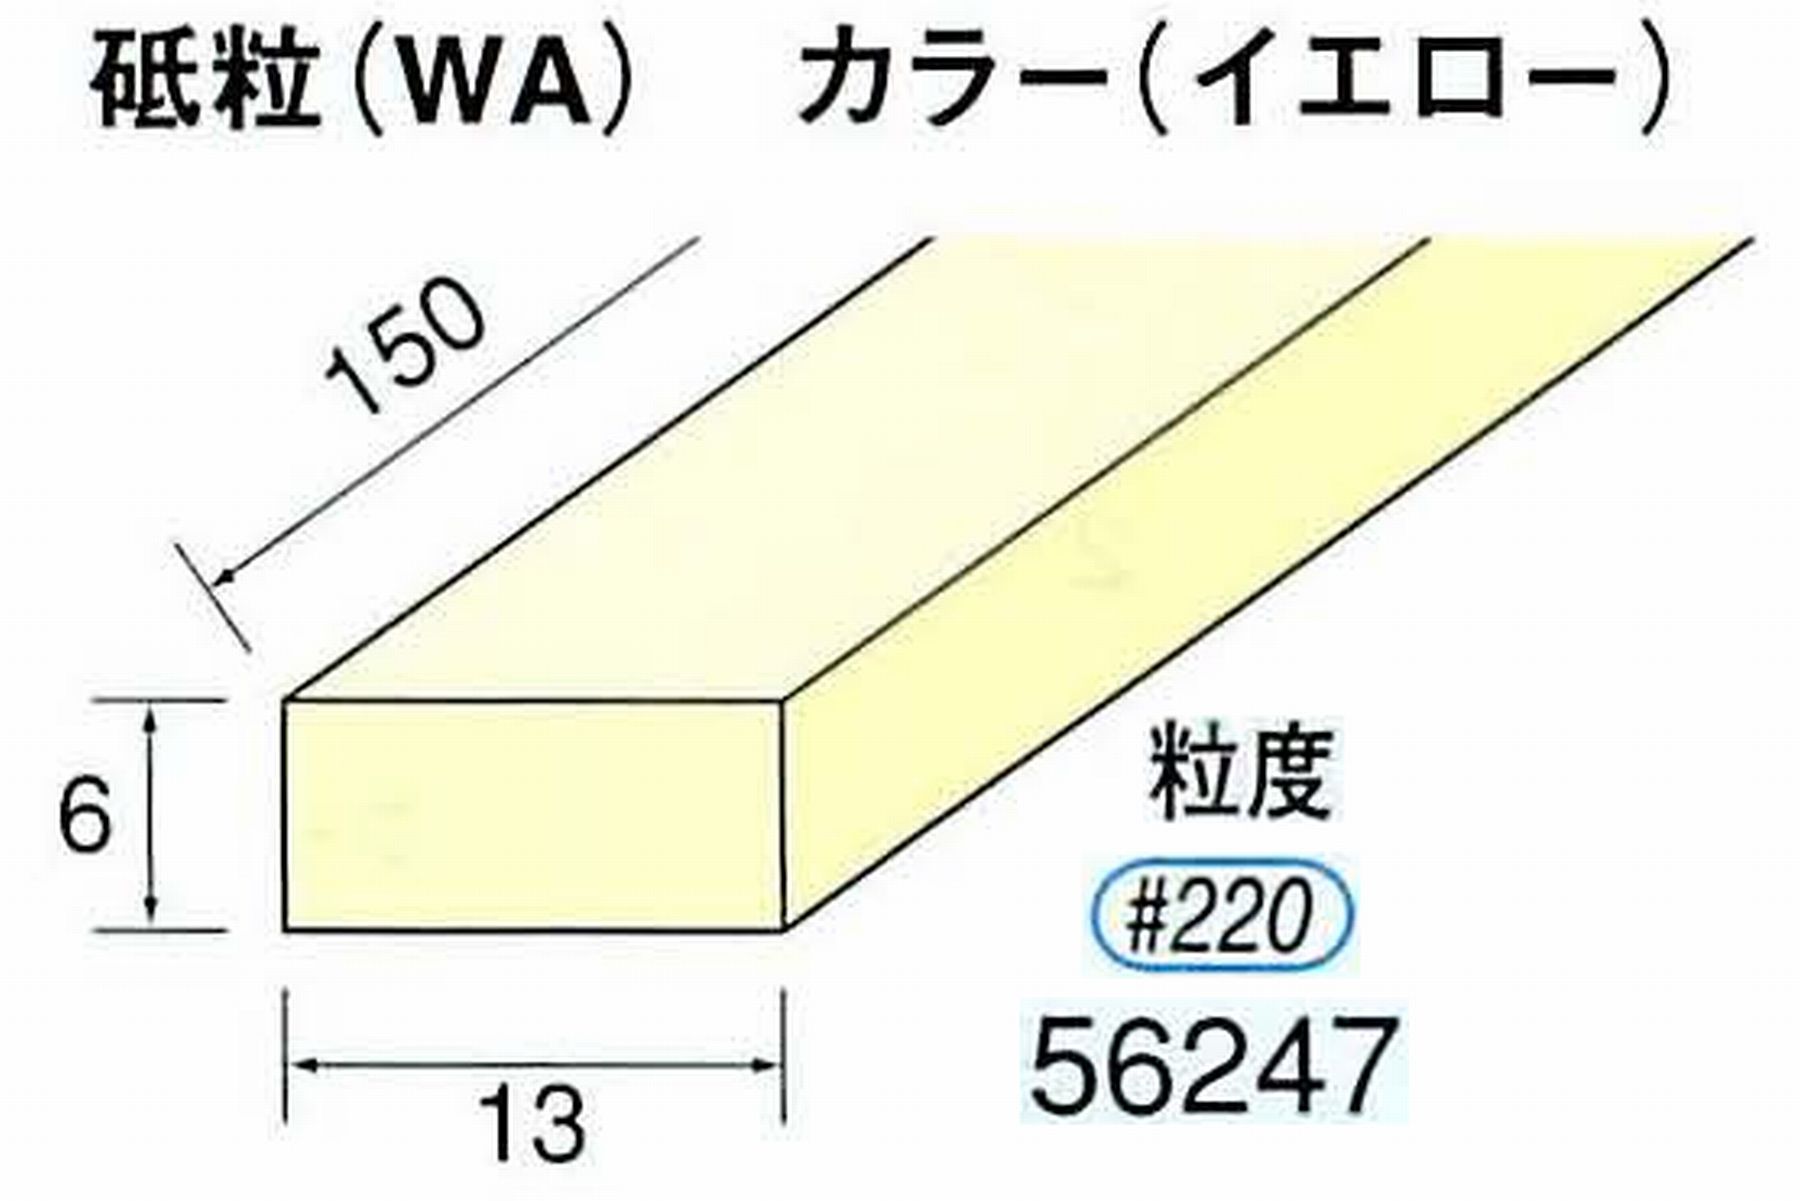 ナカニシ/NAKANISHI スティック砥石 イエロー・フィニッシュシリーズ 砥粒(WA) 56247